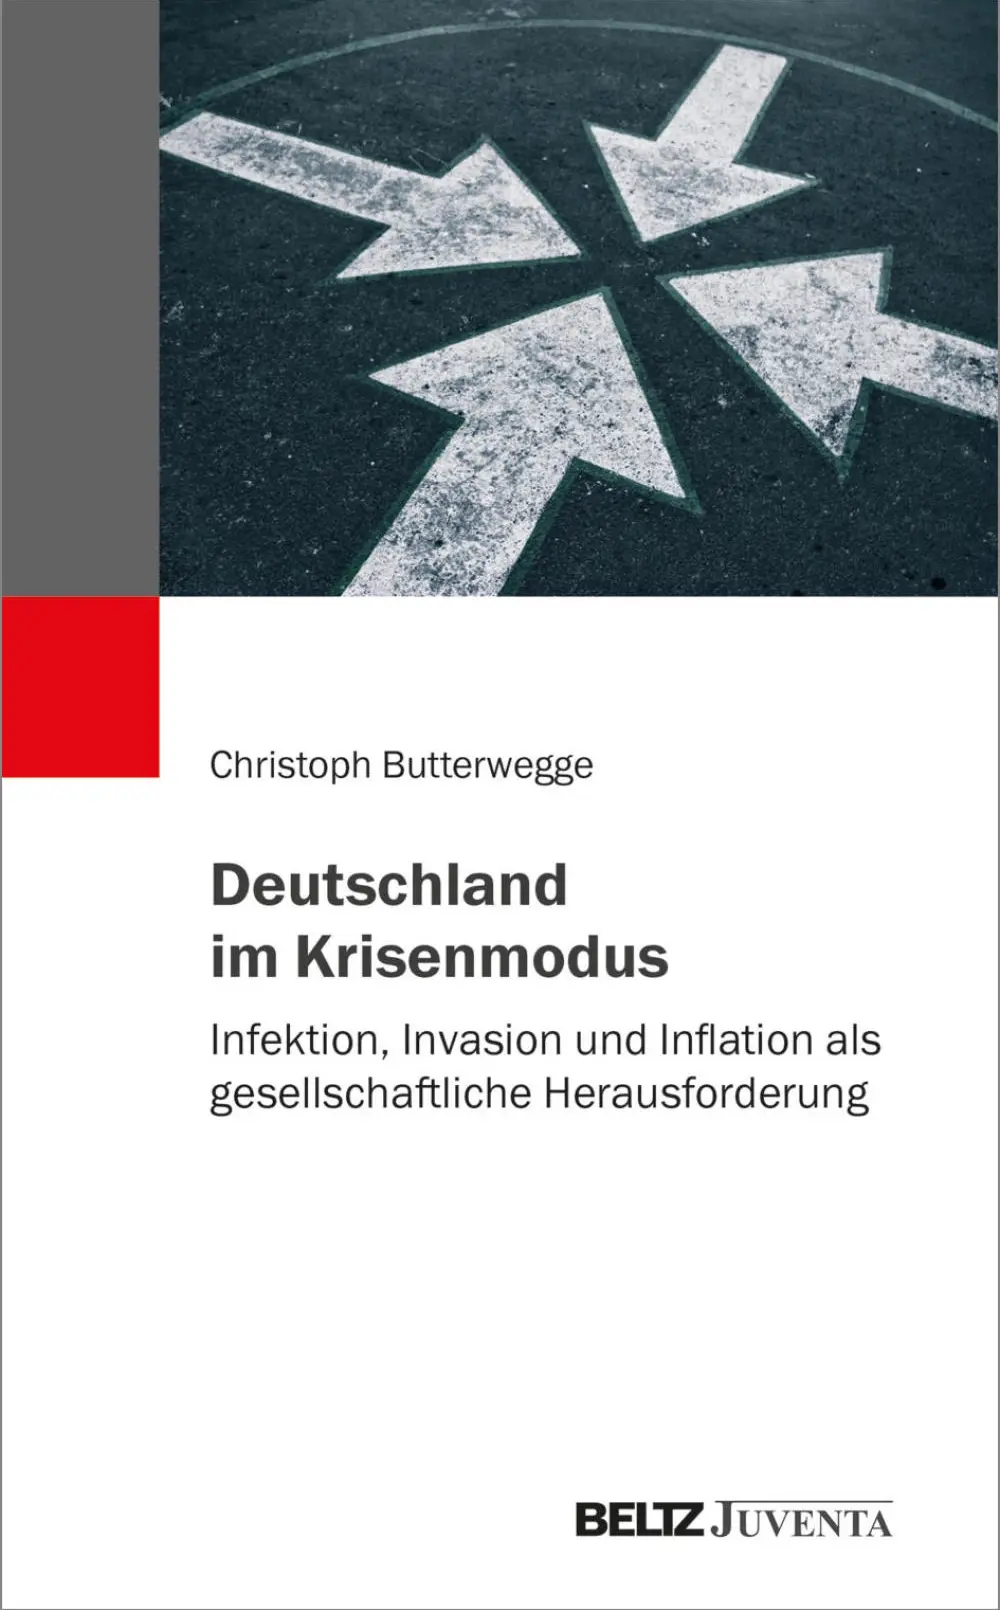 Cover von "Deutschland im Krisenmodus"